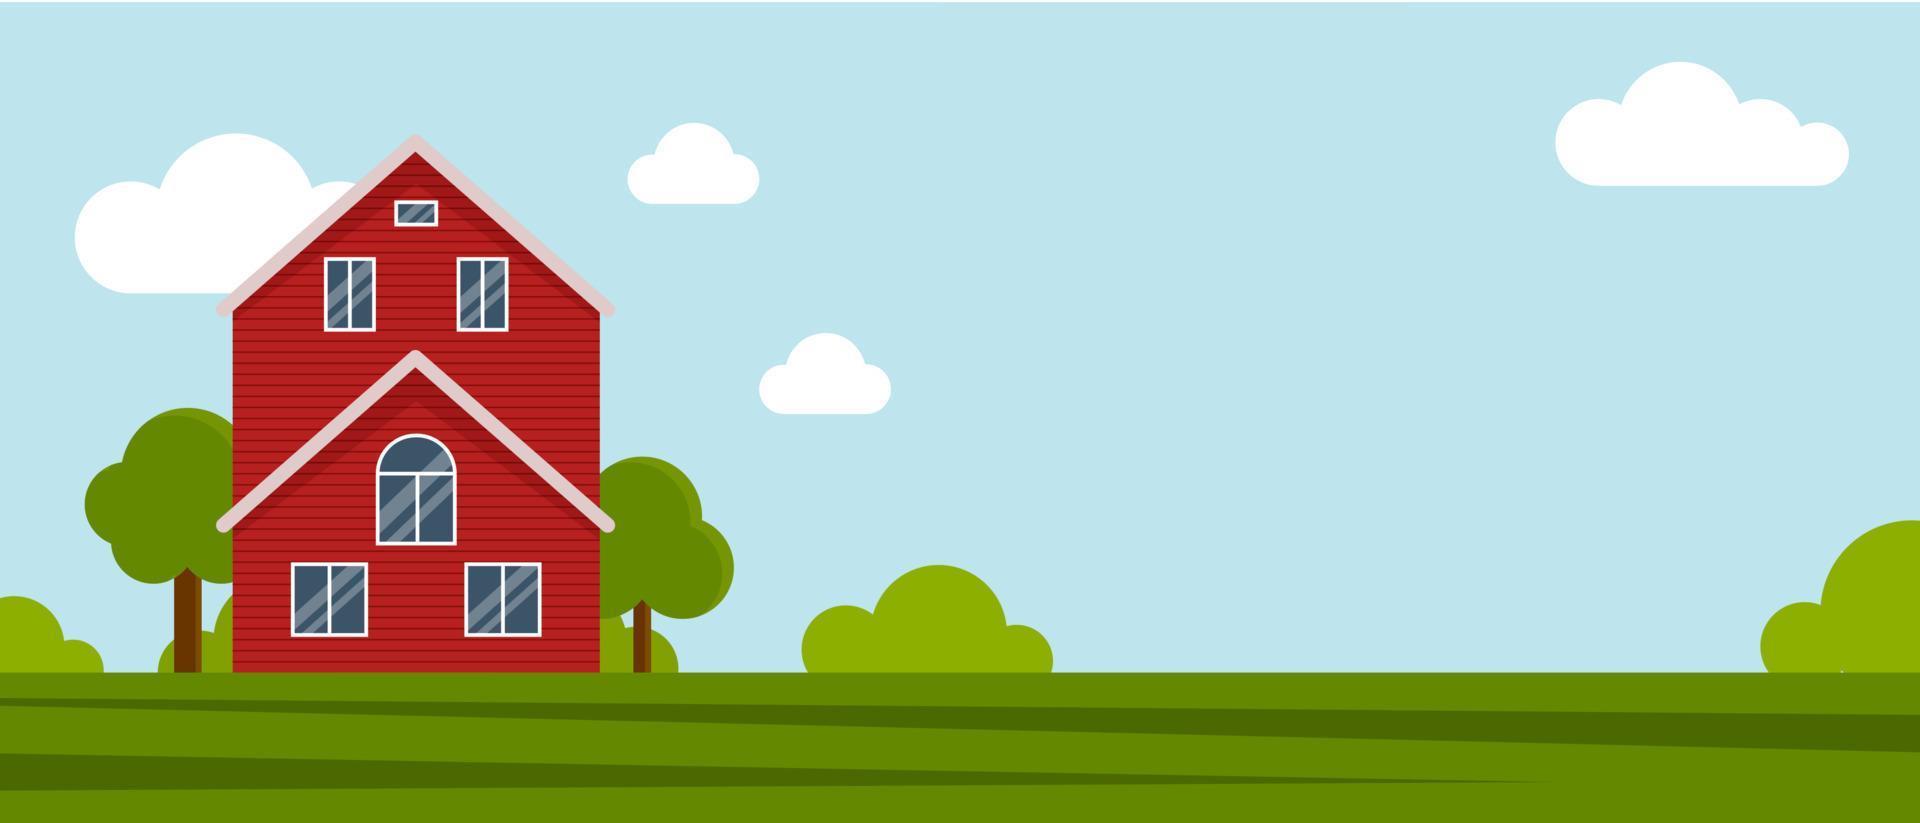 landboerderij op een groene weide, agrarische constructie. platte vectorillustratie op een achtergrond van blauwe lucht met clouds.cartoon landelijk landschap panorama field.banner voor website vector